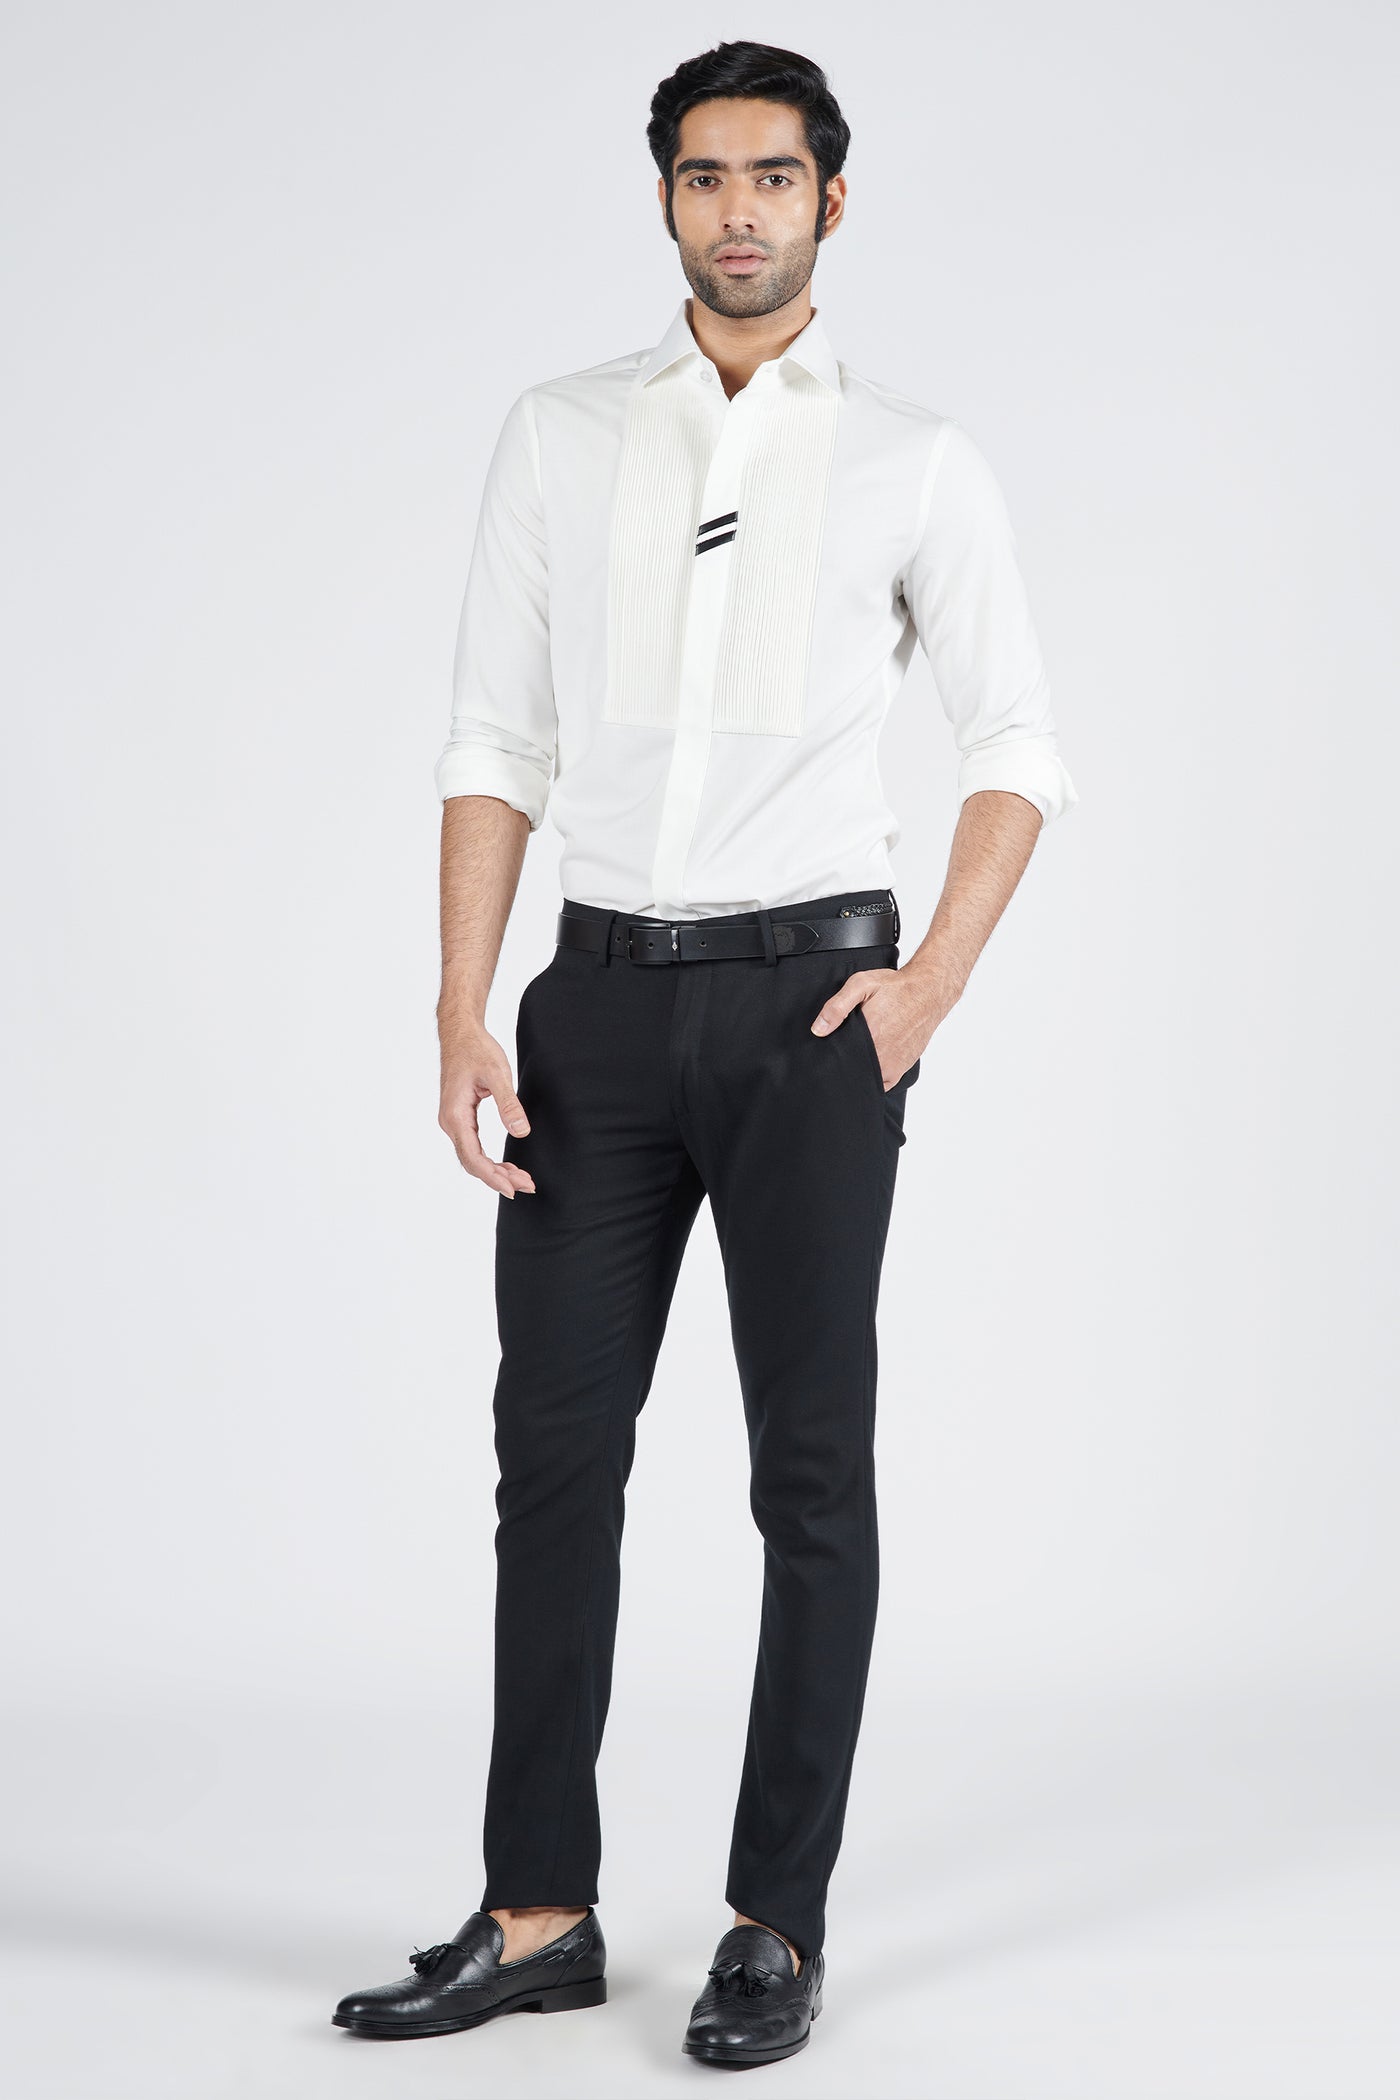 Shantanu & Nikhil Menswear Off White Shirt with Tucks Details indian designer wear online shopping melange singapore